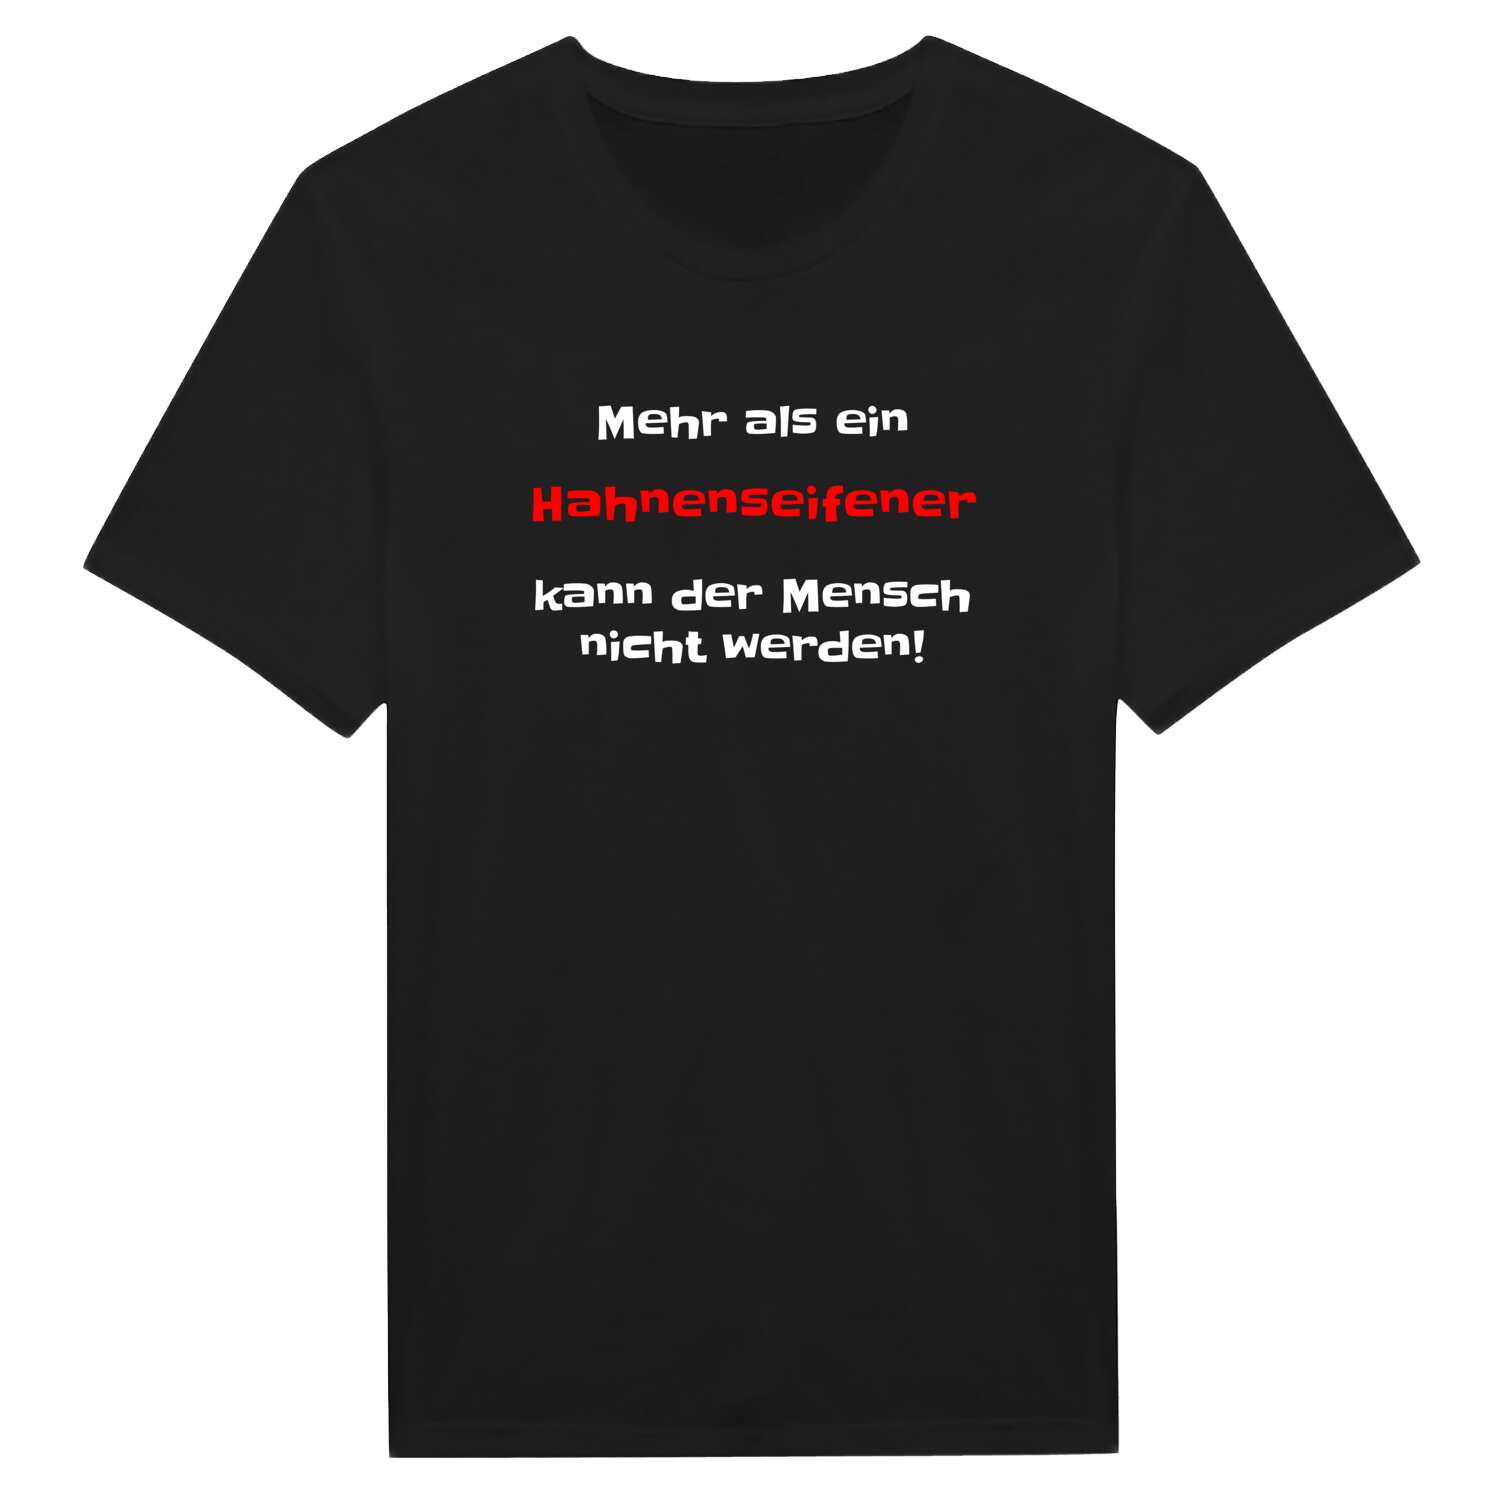 Hahnenseifen T-Shirt »Mehr als ein«